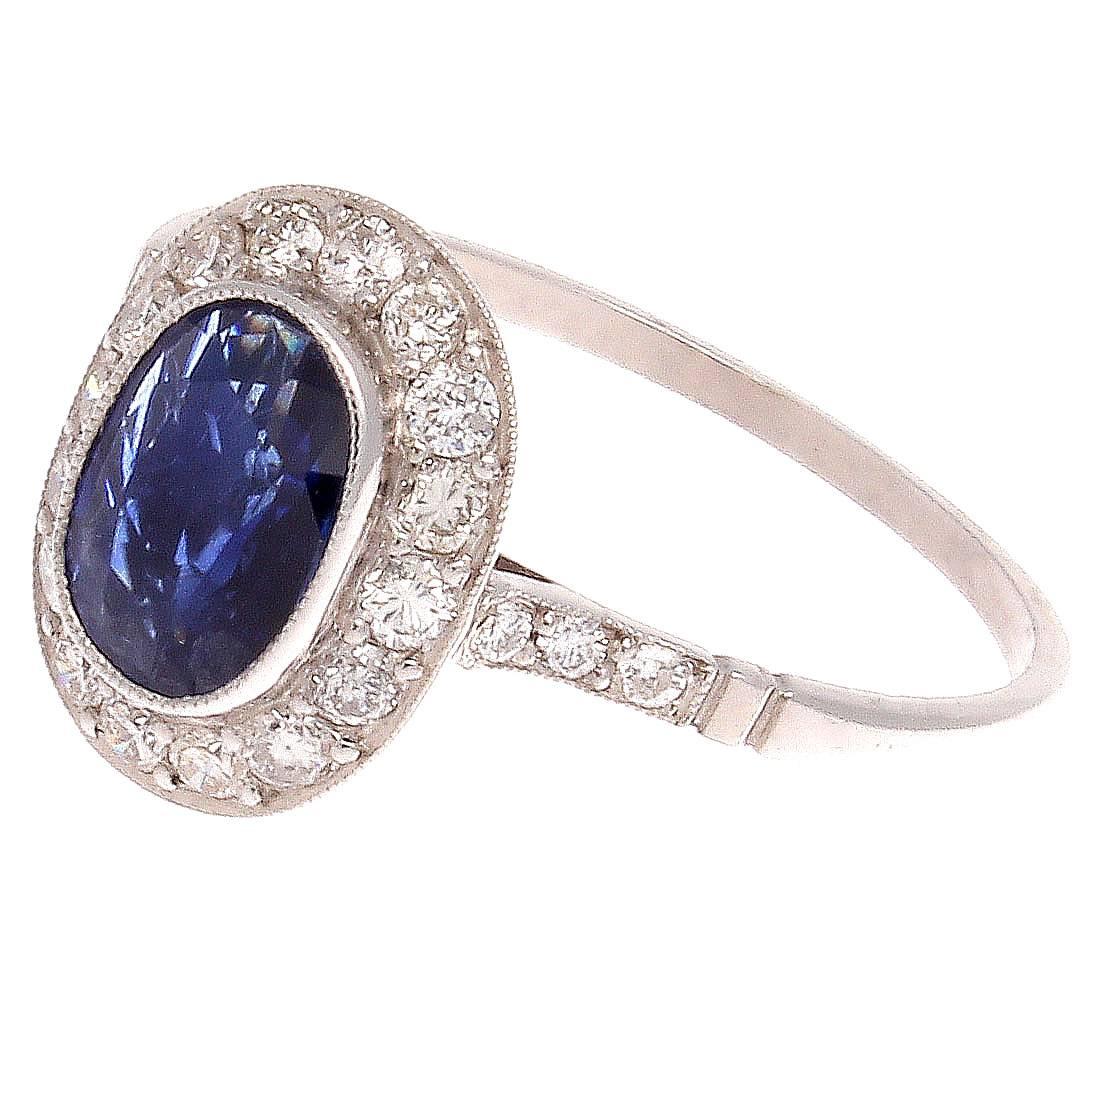 Oval Cut Sapphire Diamond Platinum Ring